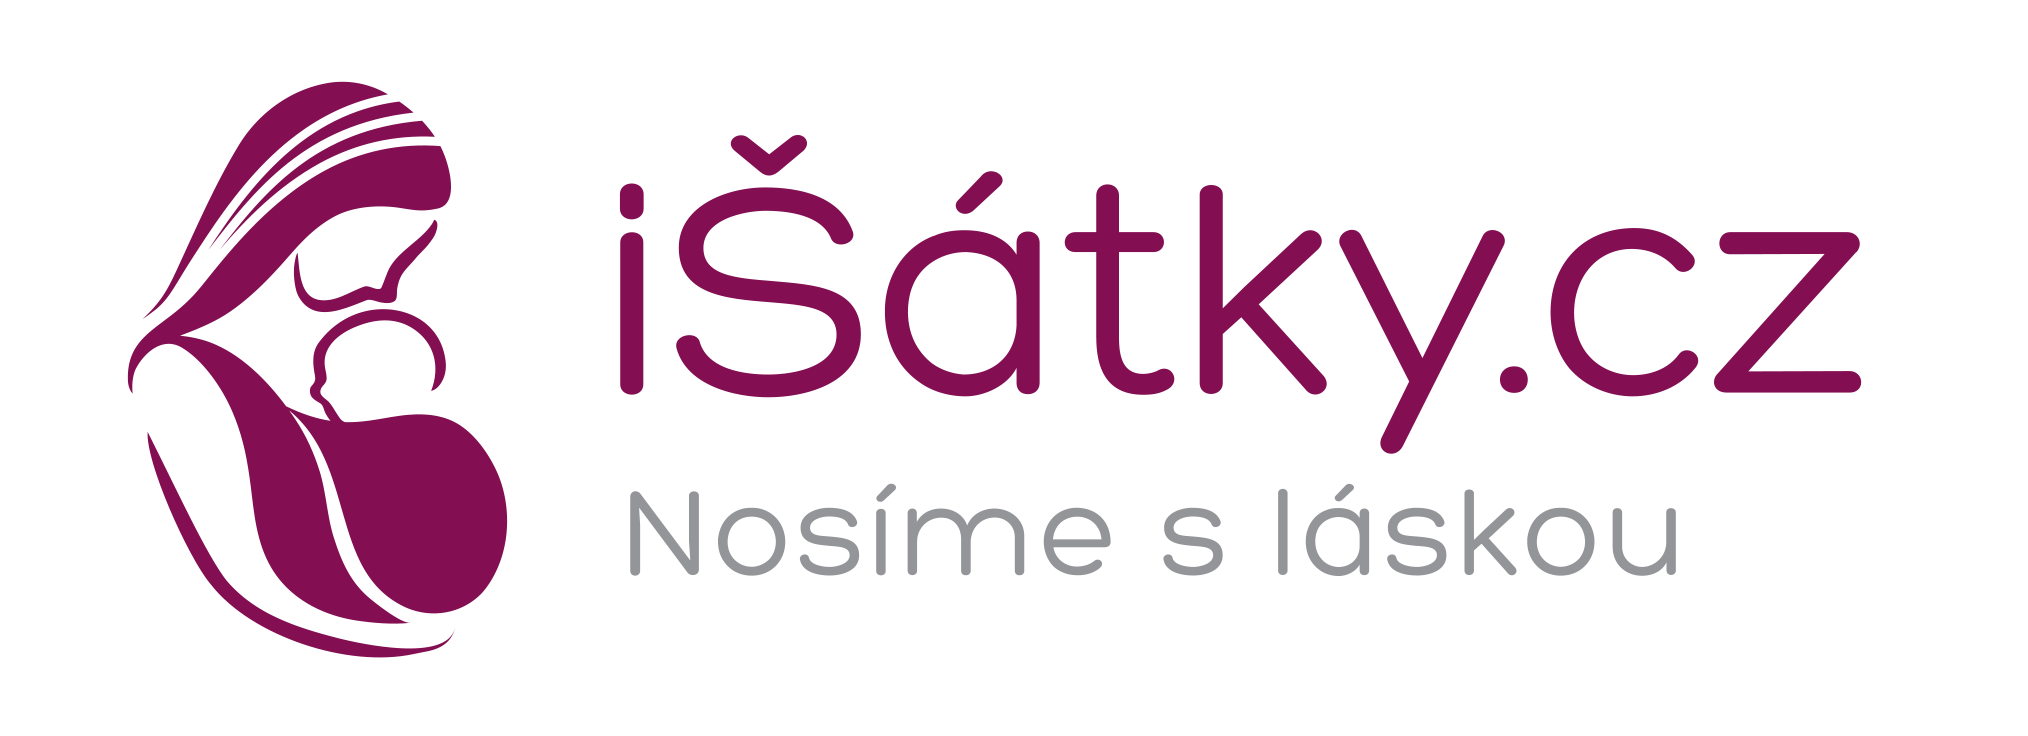 iSatky.cz